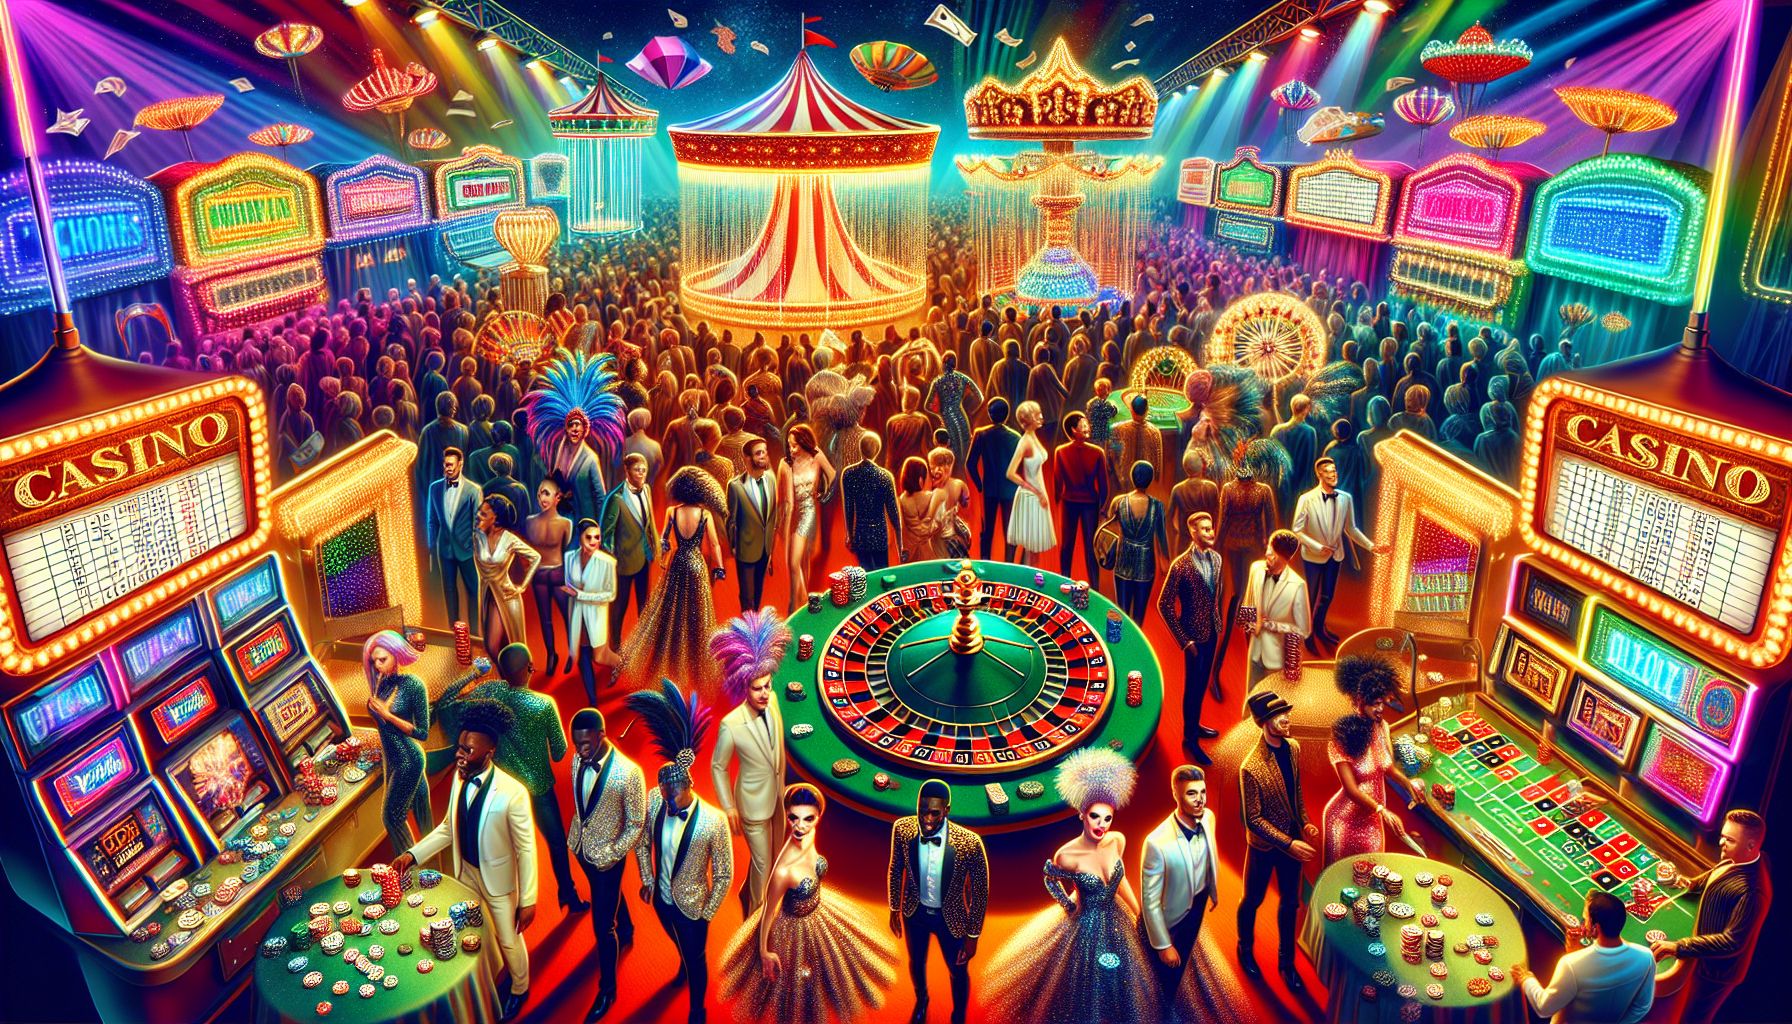 Casino Carnival: Games, Glamour, and Glitz